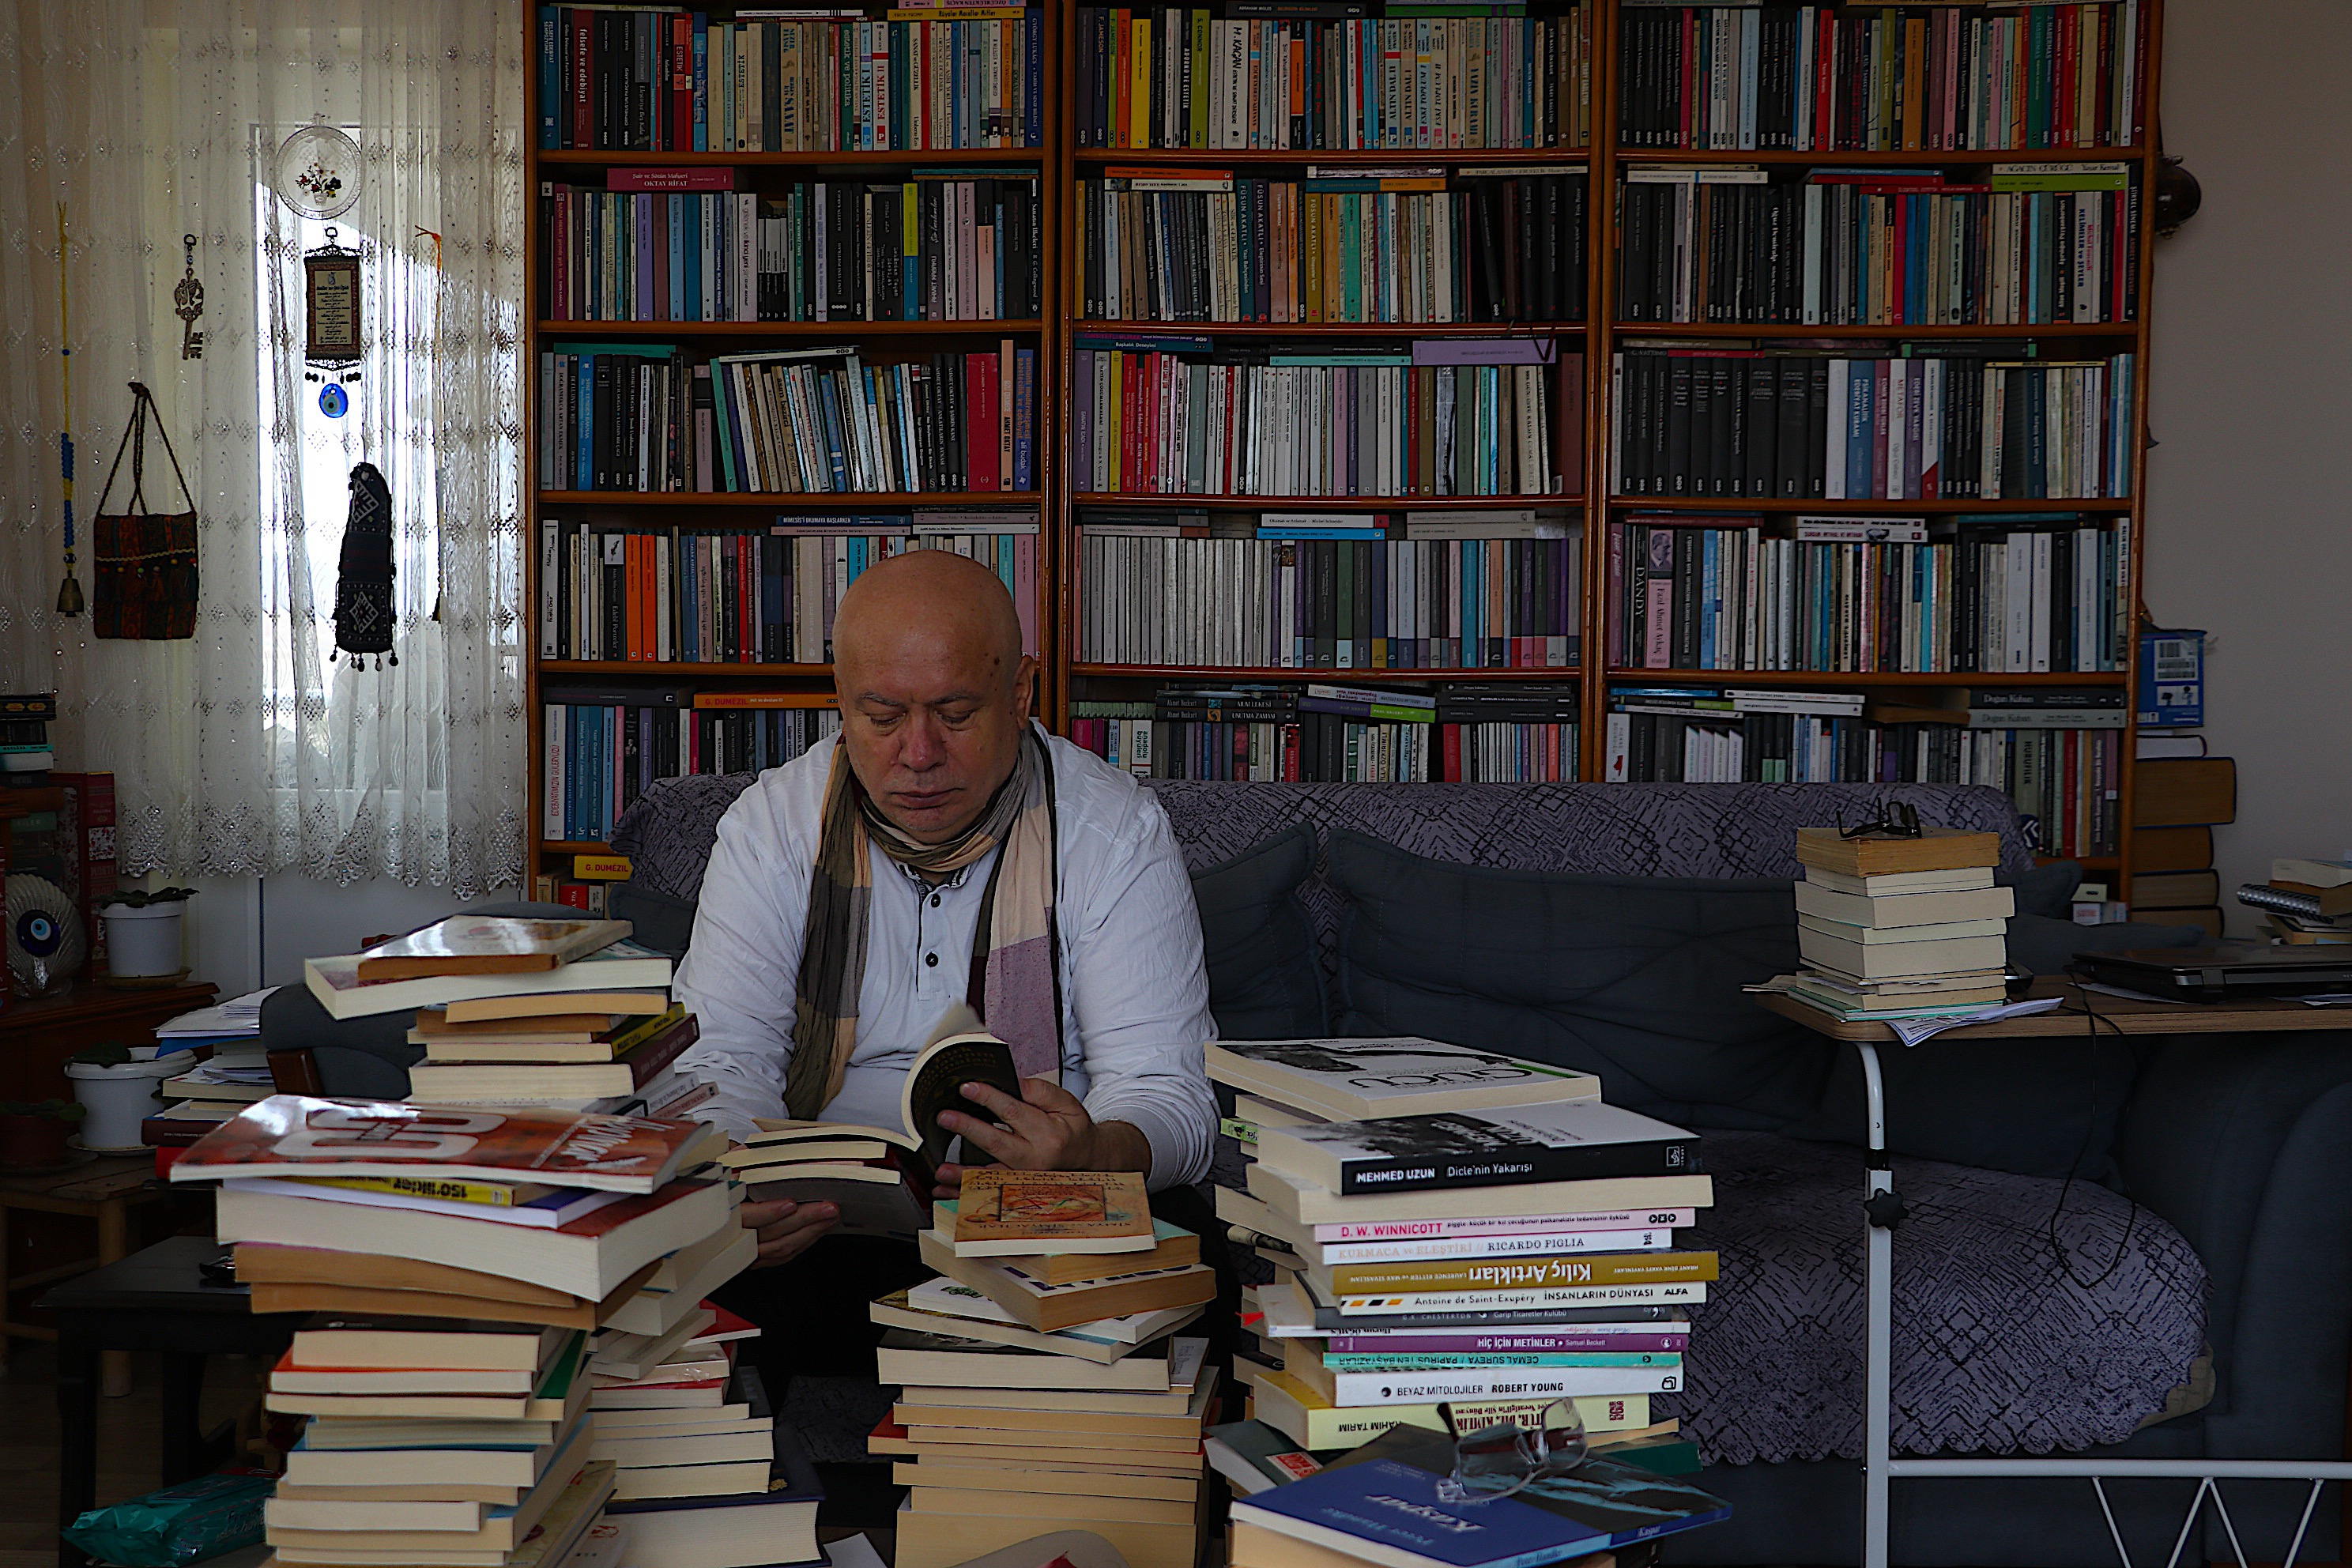 Bayburt'ta akademisyen evindeki binlerce kitapla iç içe yaşıyor